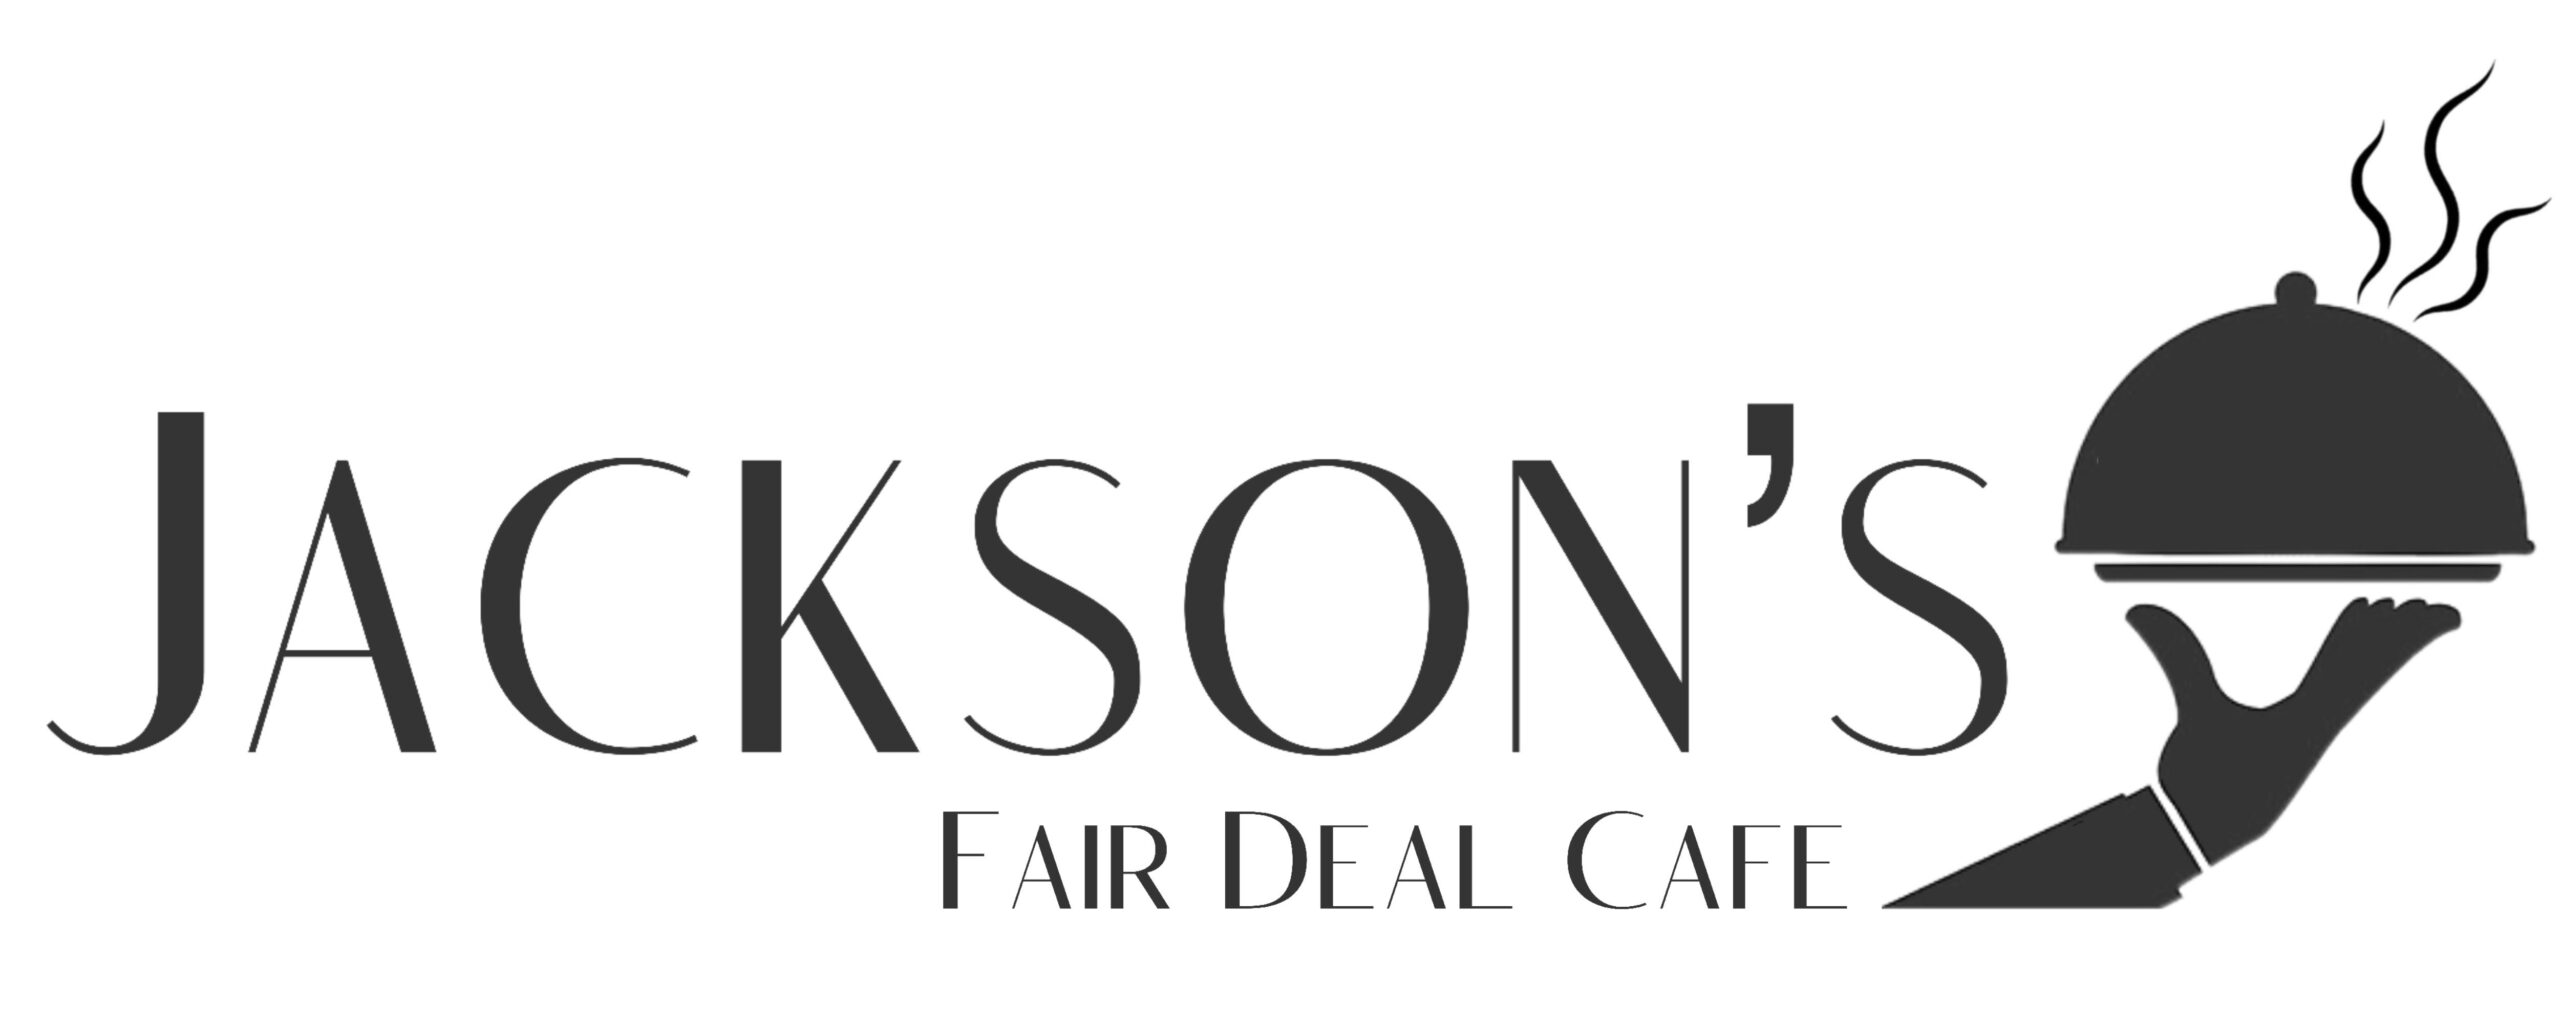 Jackson’s Fair Deal Cafe